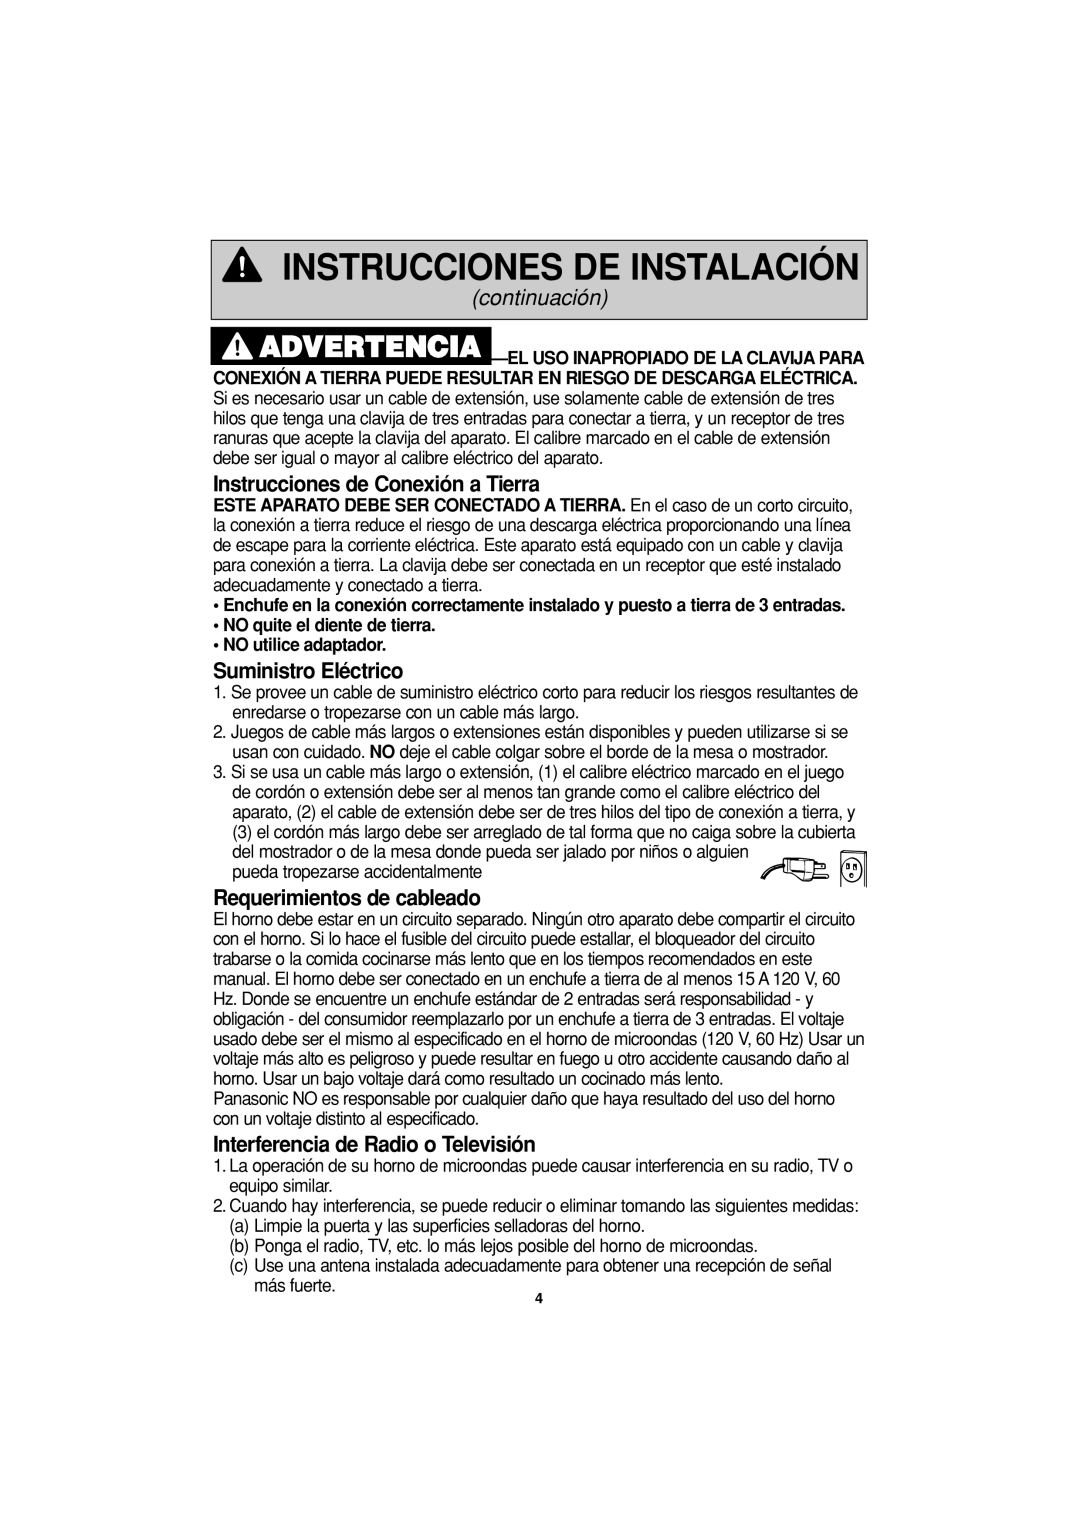 Panasonic NN-S334 Instrucciones de Conexión a Tierra, Suministro Eléctrico, Requerimientos de cableado, continuación 